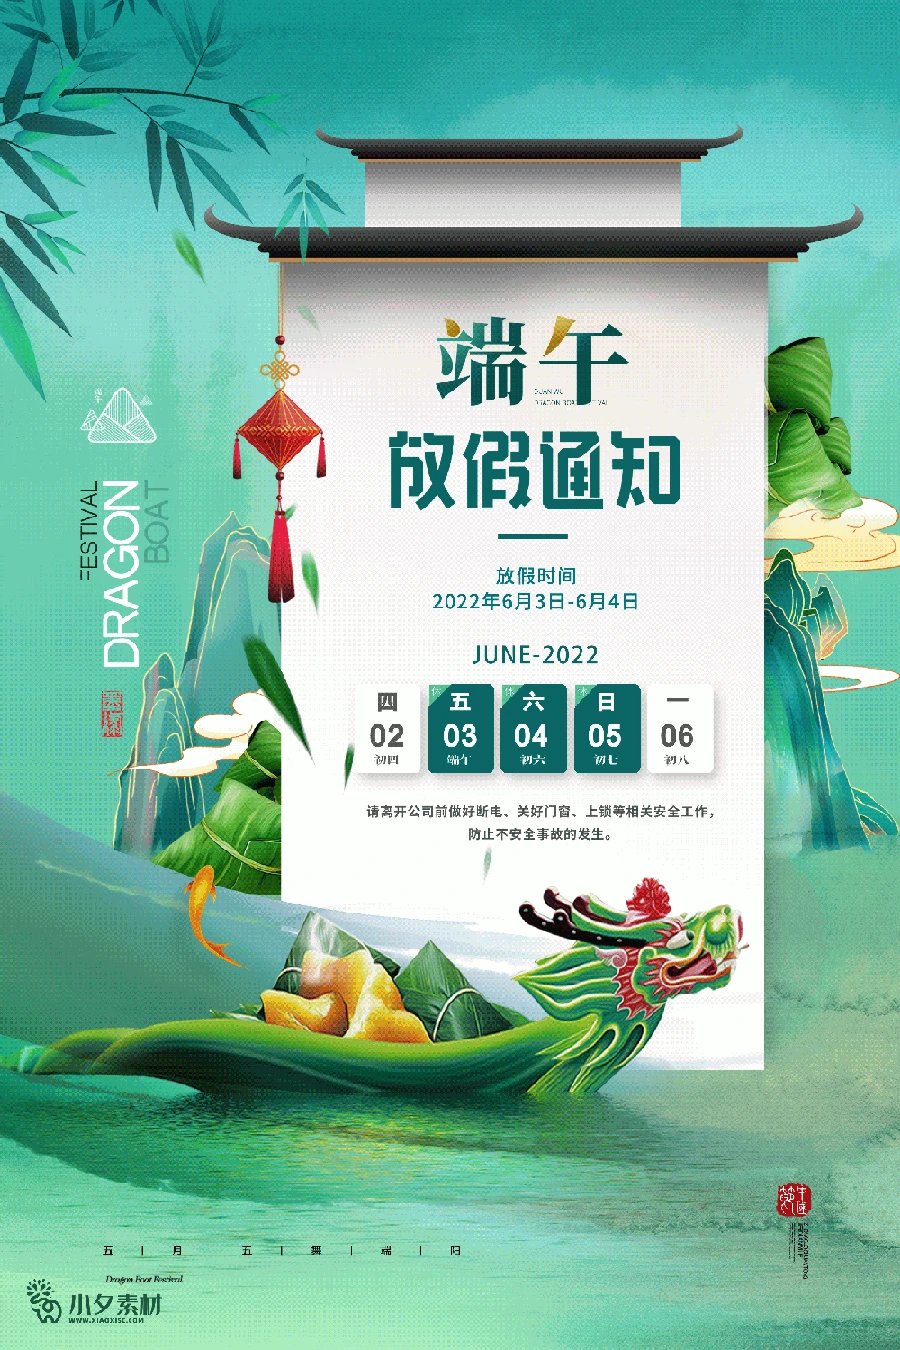 2022中国风传统节日端午节粽子放假通知海报模板PSD分层设计素材 【026】